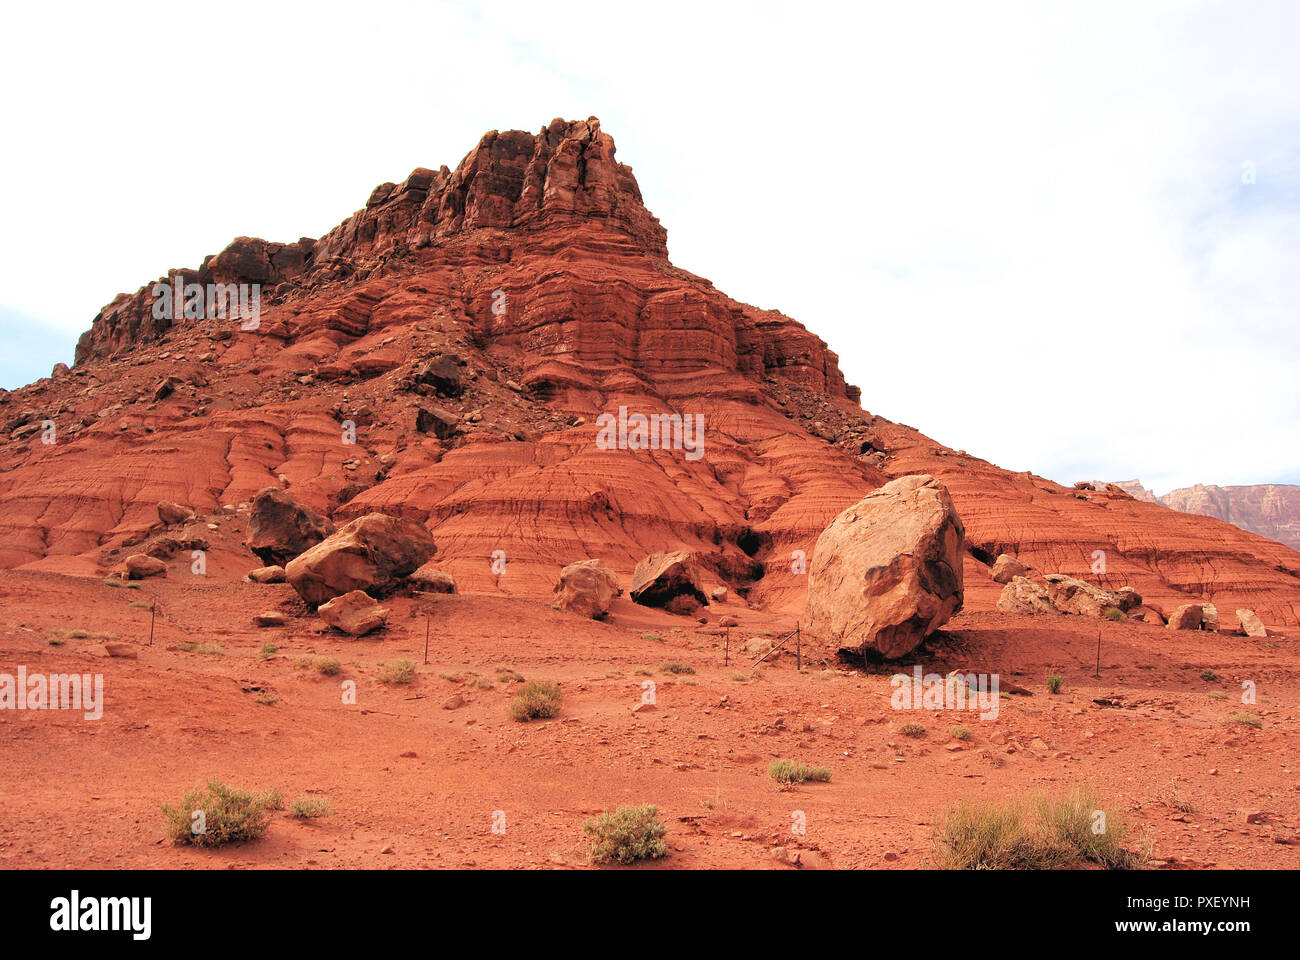 Eine rote Landschaft aus Sandstein und alte Rock Formation in der Wüste von Arizona, USA, mit Felsen auf dem Sand und einem hellen weißen Himmel Stockfoto